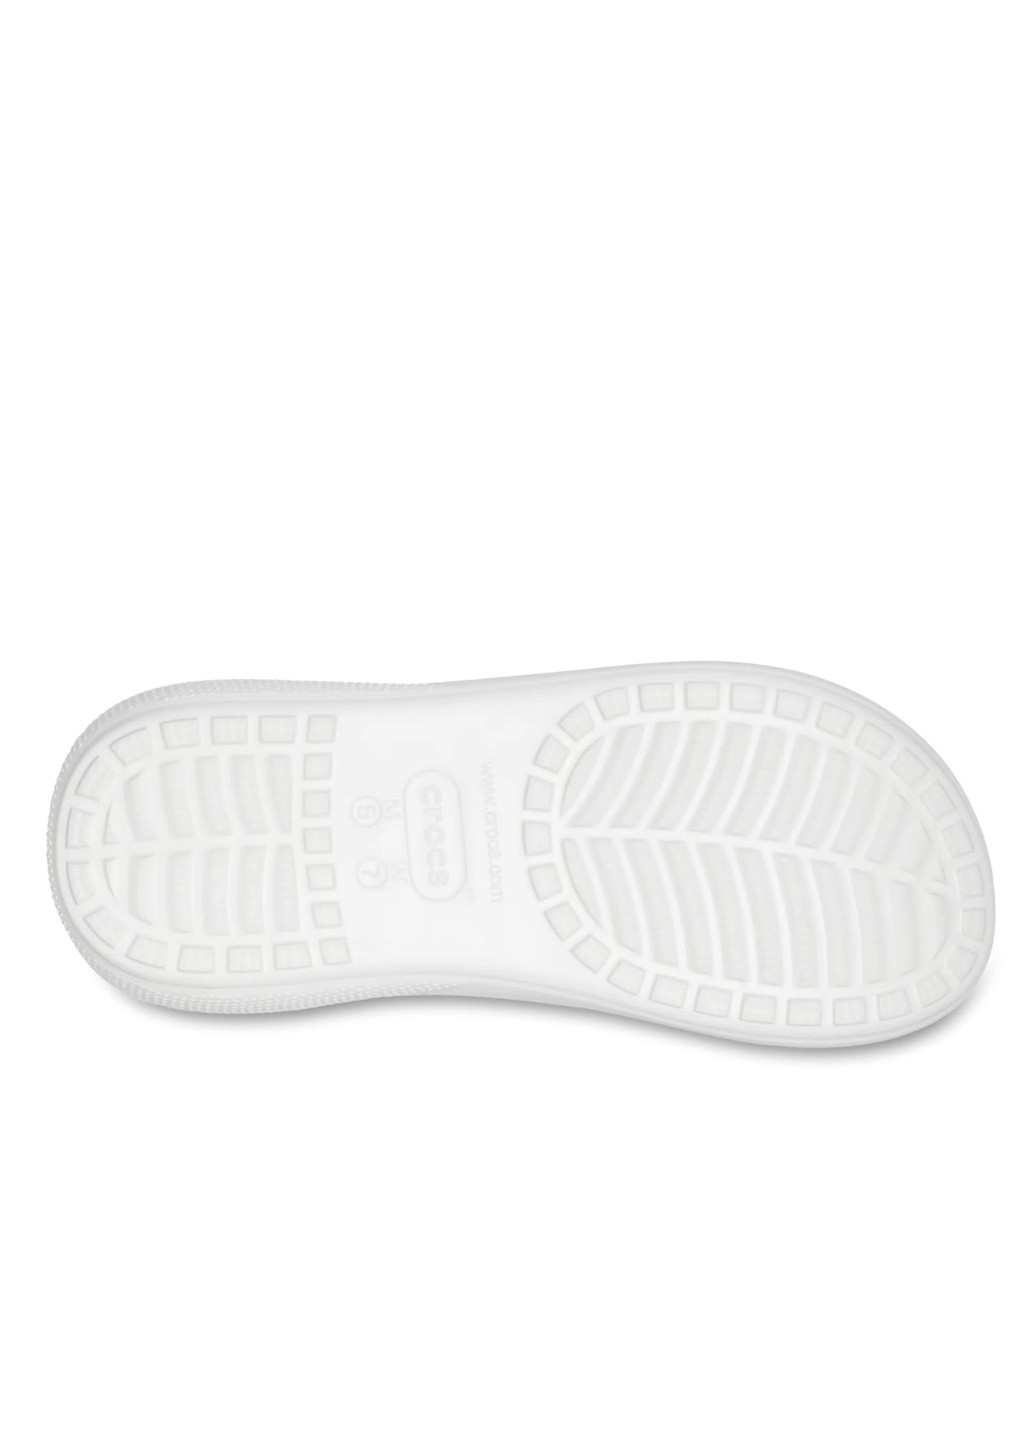 Белые сандалии на высокой платформе Crocs на высоком каблуке